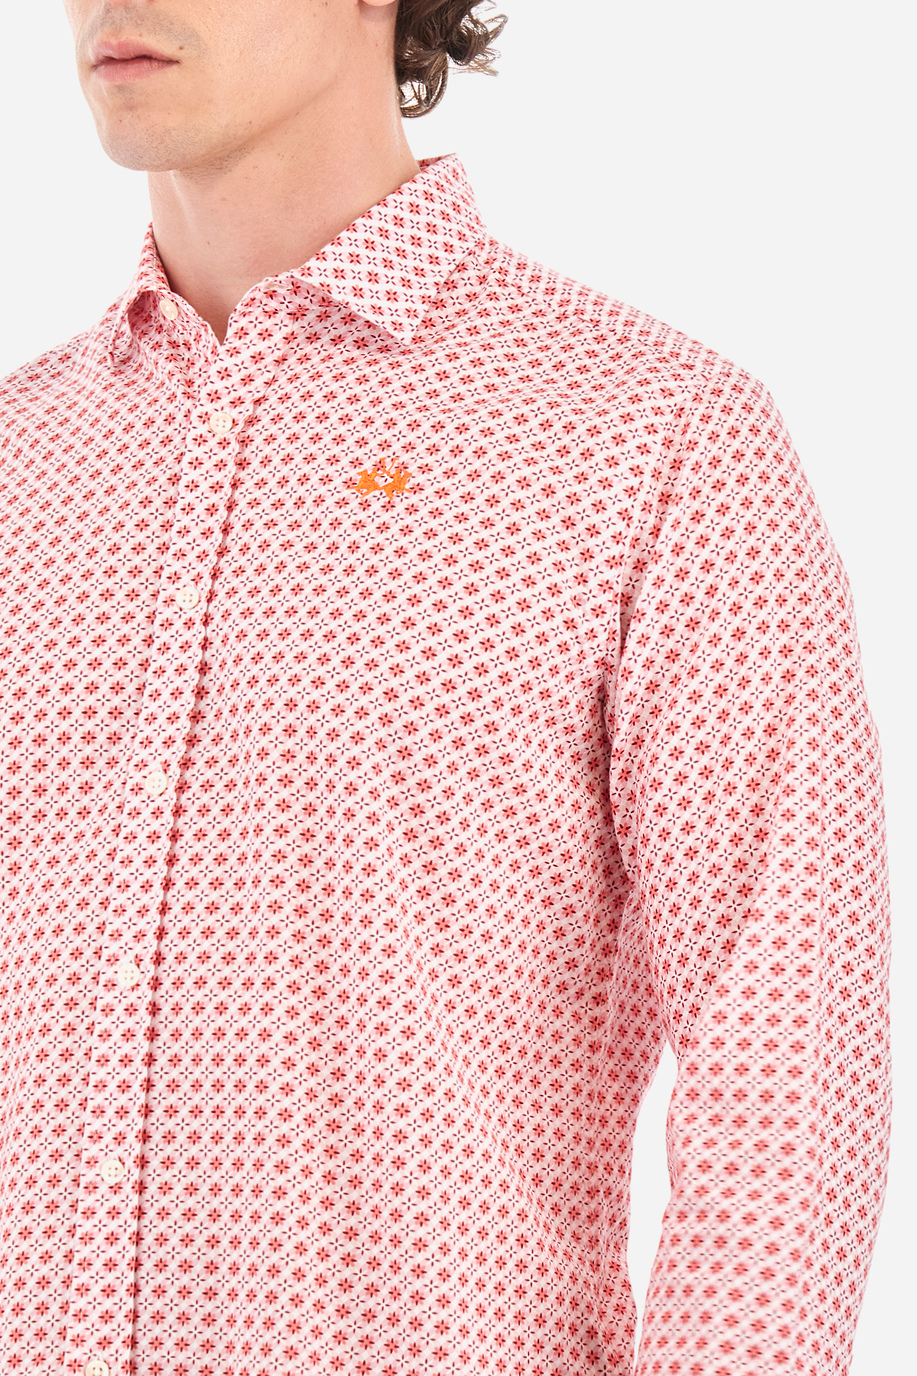 Chemise en popeline à motif géométrique - Innocent - Chemises | La Martina - Official Online Shop